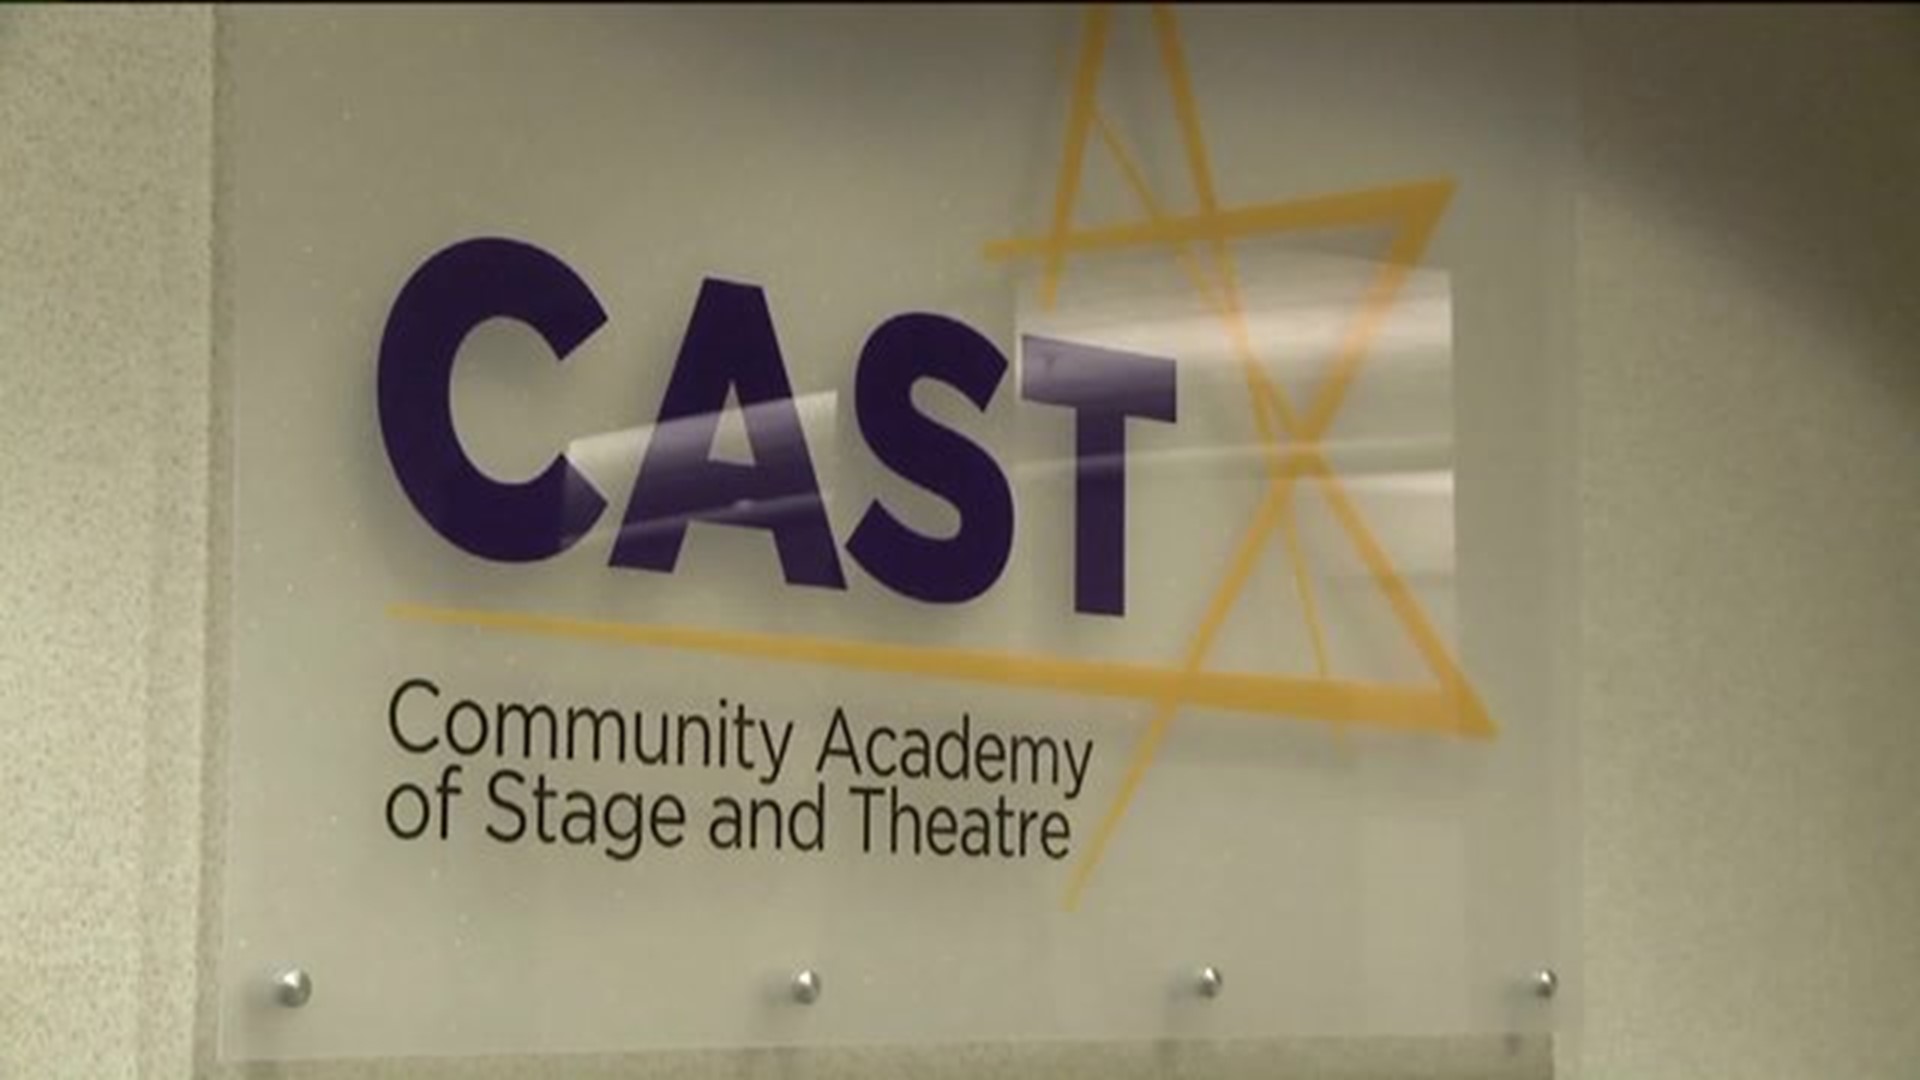 Casting Call: Open Enrollment at New Drama School